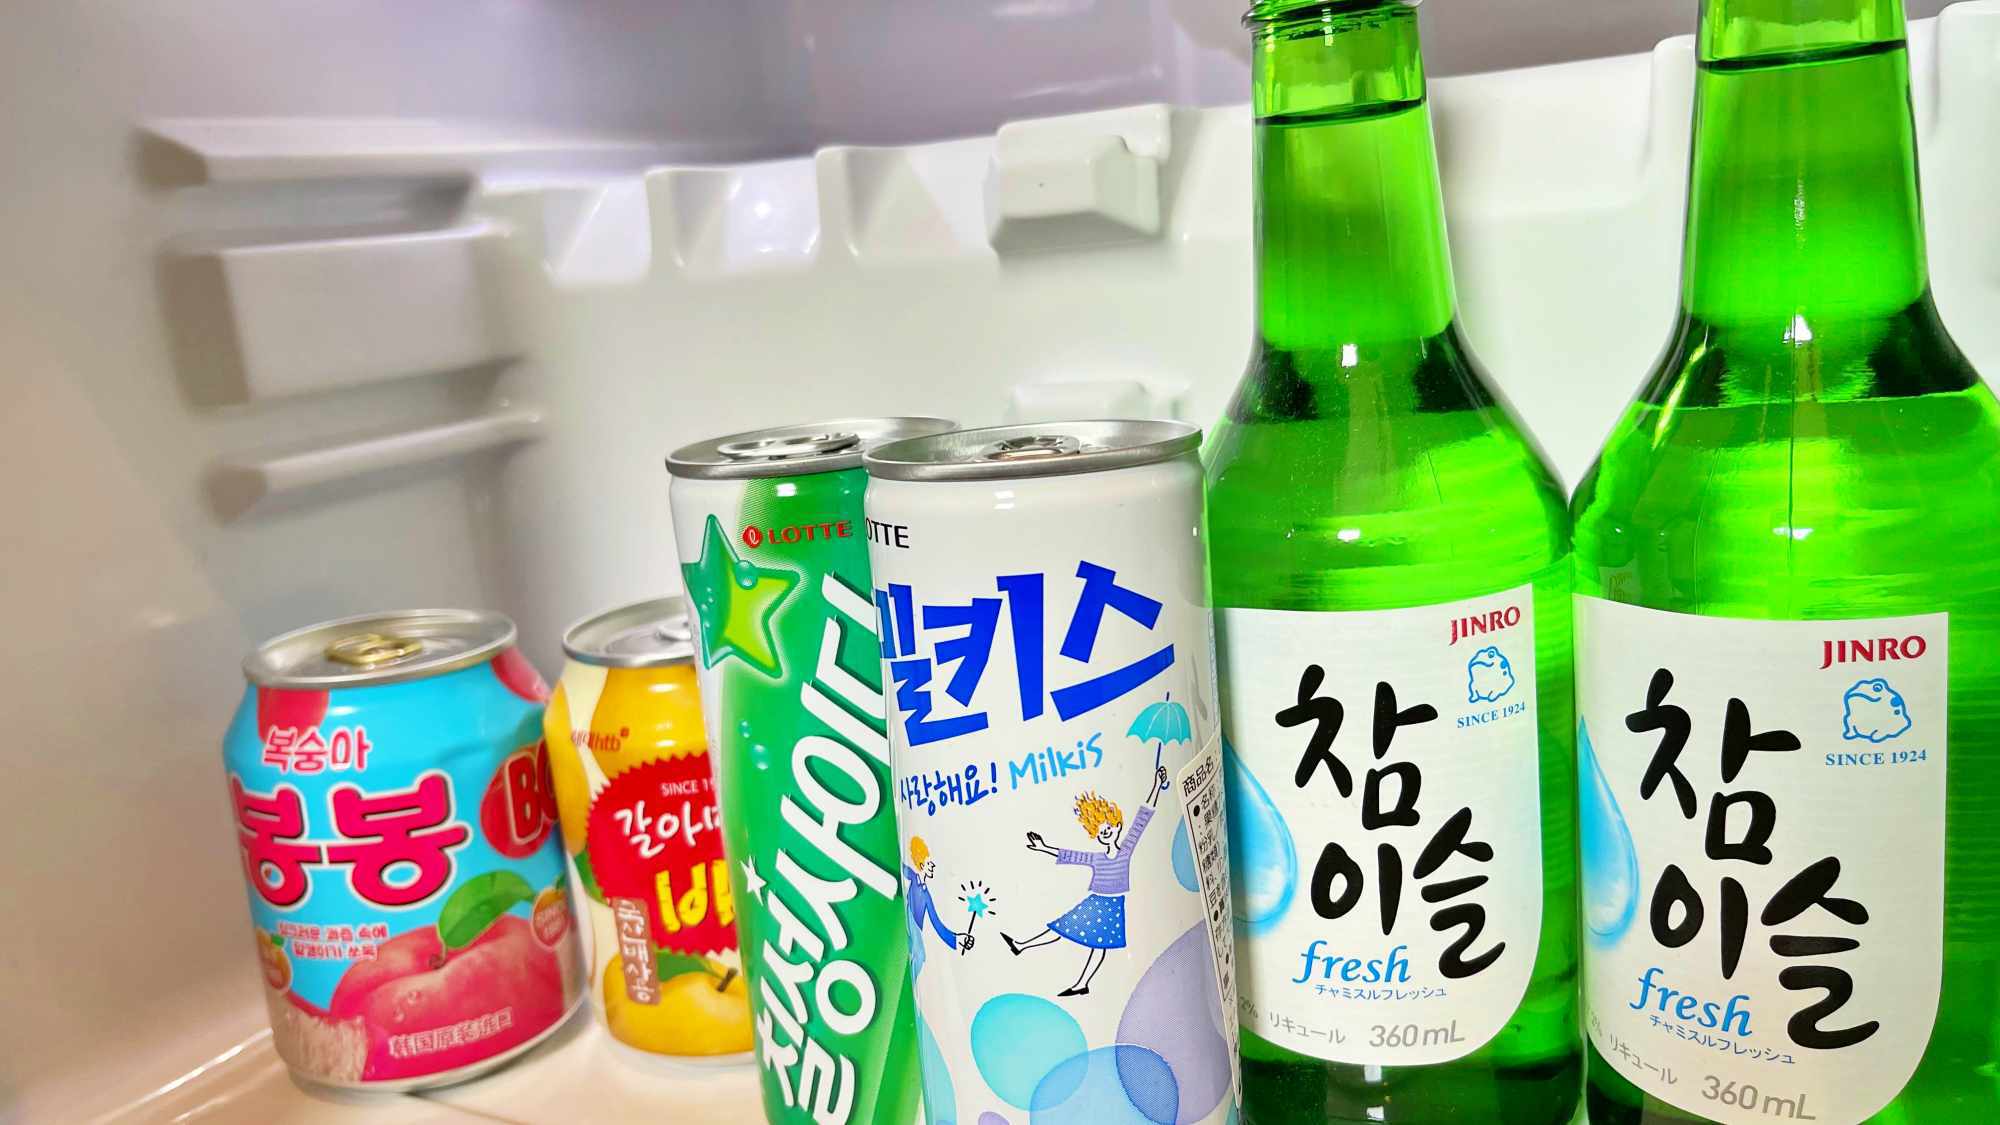 【渡韓ごっこプラン】冷蔵庫内のドリンクは韓国仕様。無料でお飲みいただけます。